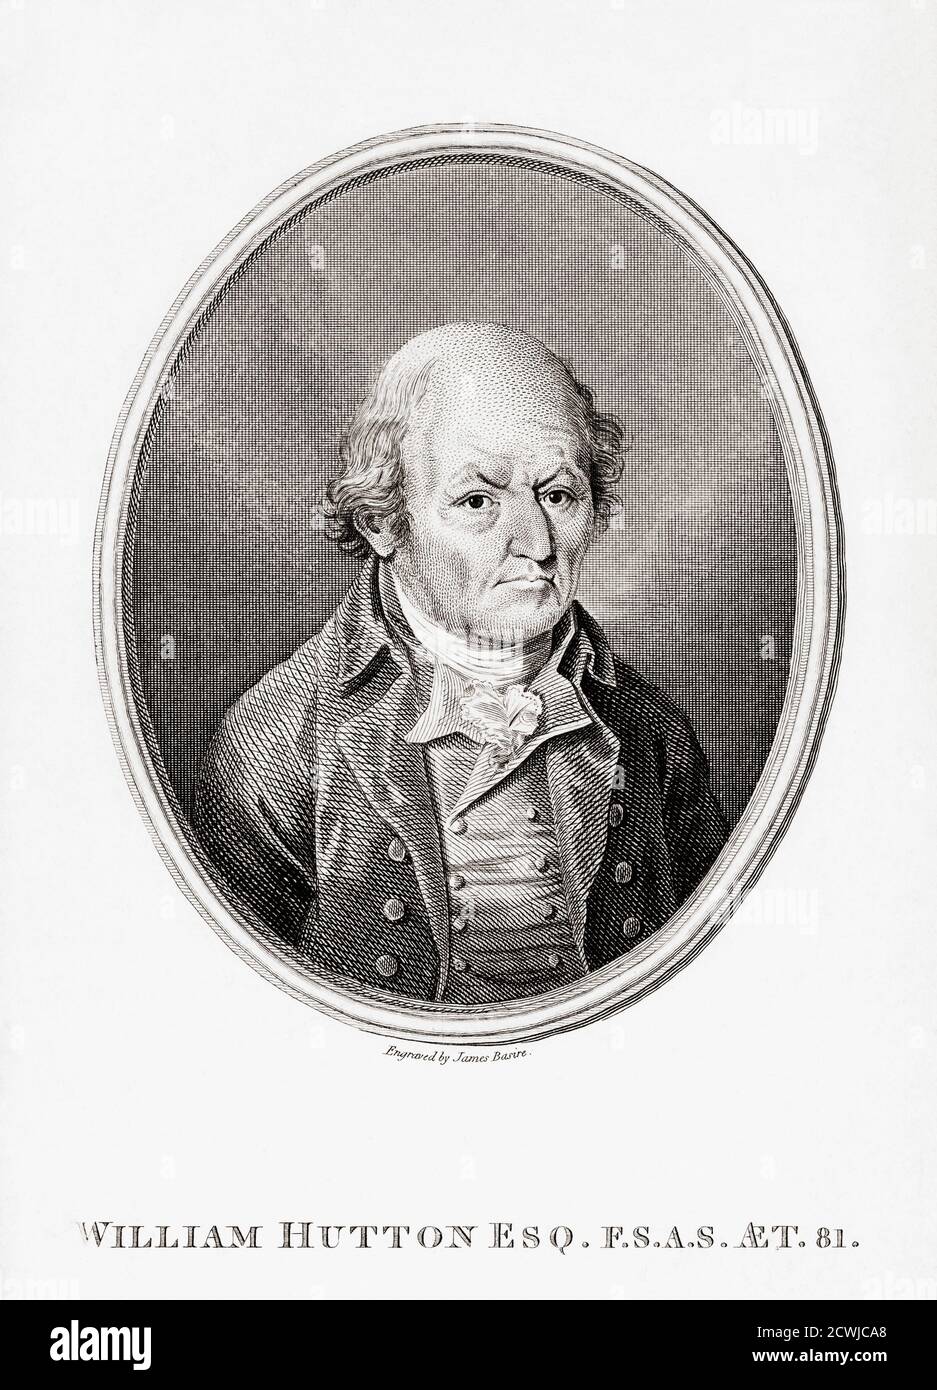 William Hutton, 1723 - 1815, bookseller, poeta, storico e scrittore di viaggi inglese. Fu il primo storico importante della città di Birmingham e fu autore di un libro, History of Birmingham nel 1781. Dopo un'incisione di James Basire datata 1804. Foto Stock